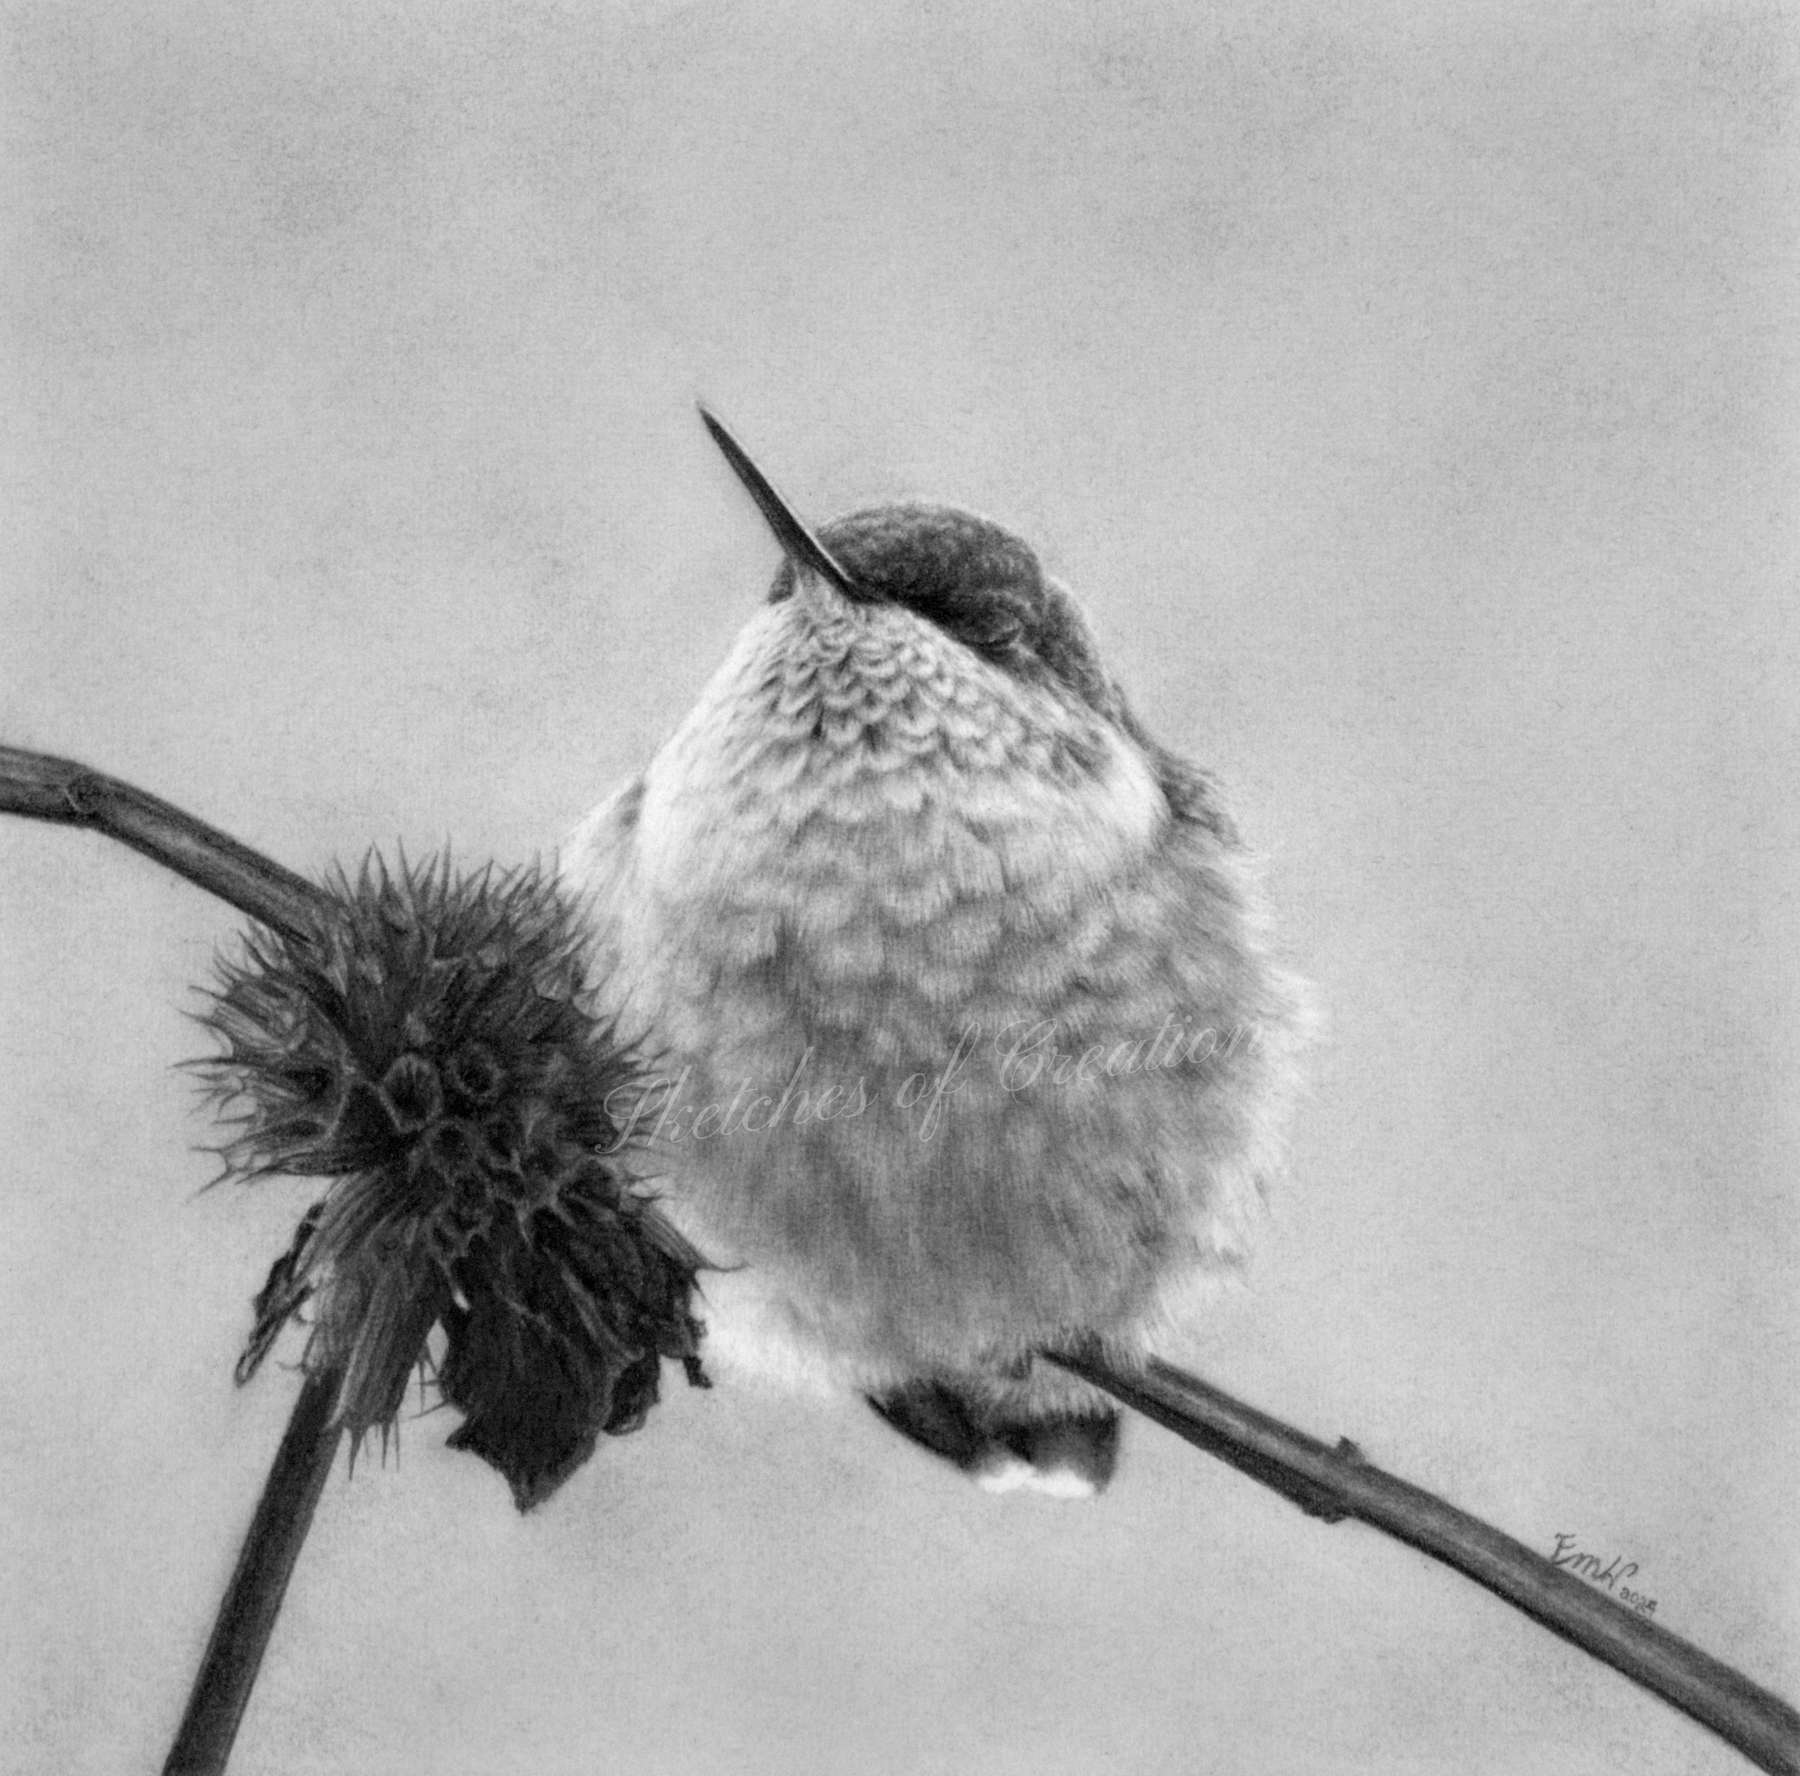 A drawing of a sleeping hummingbird